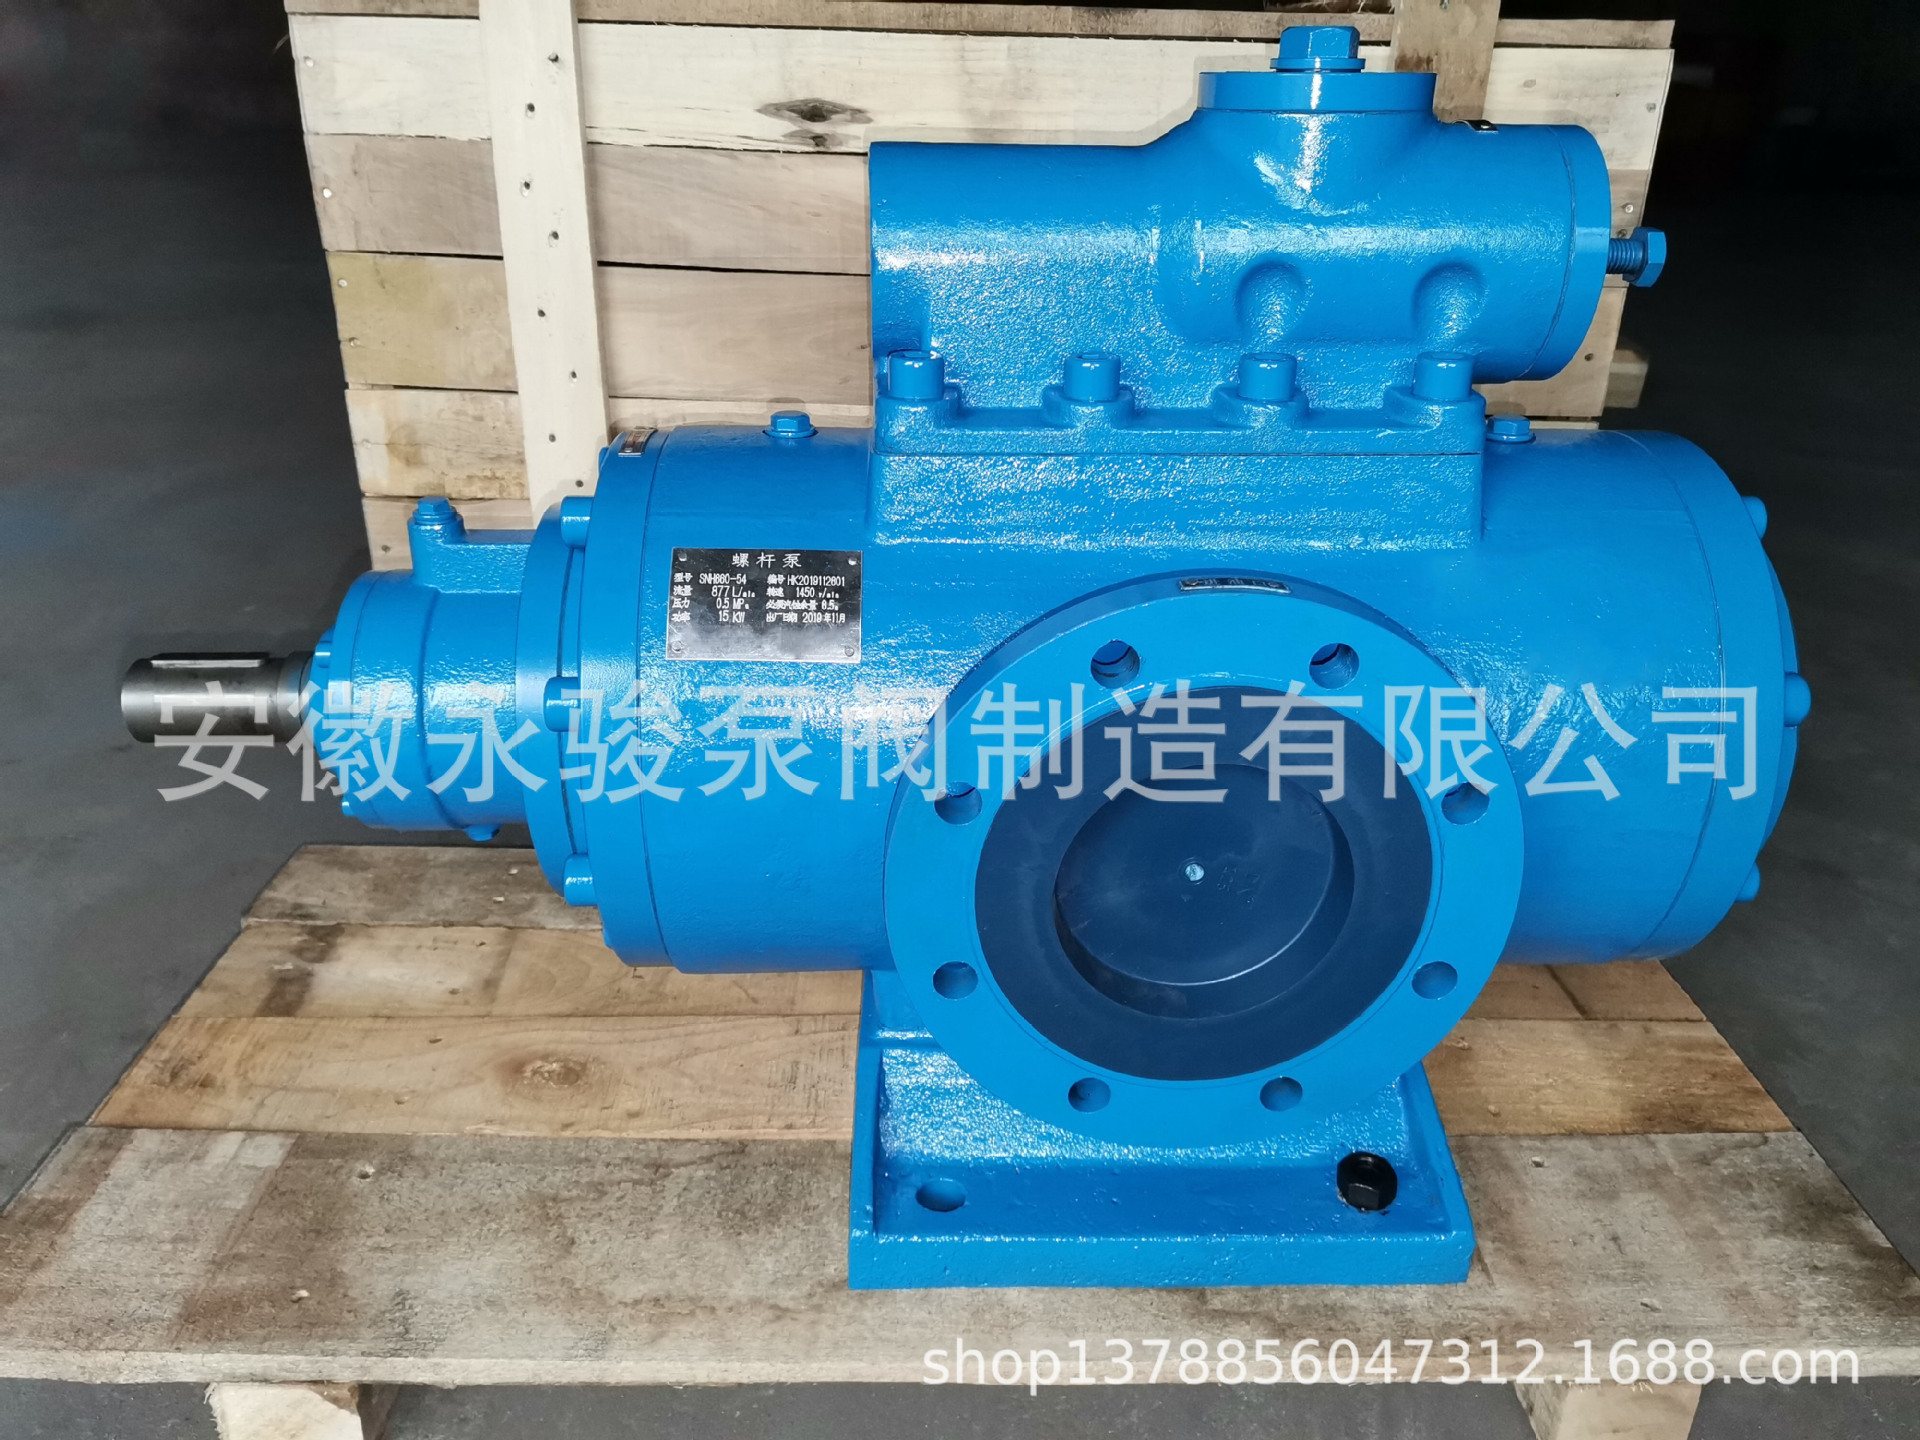 黄山螺杆泵 SNH660-54 SN三螺杆泵 稀油站润滑系统油泵 安徽永骏